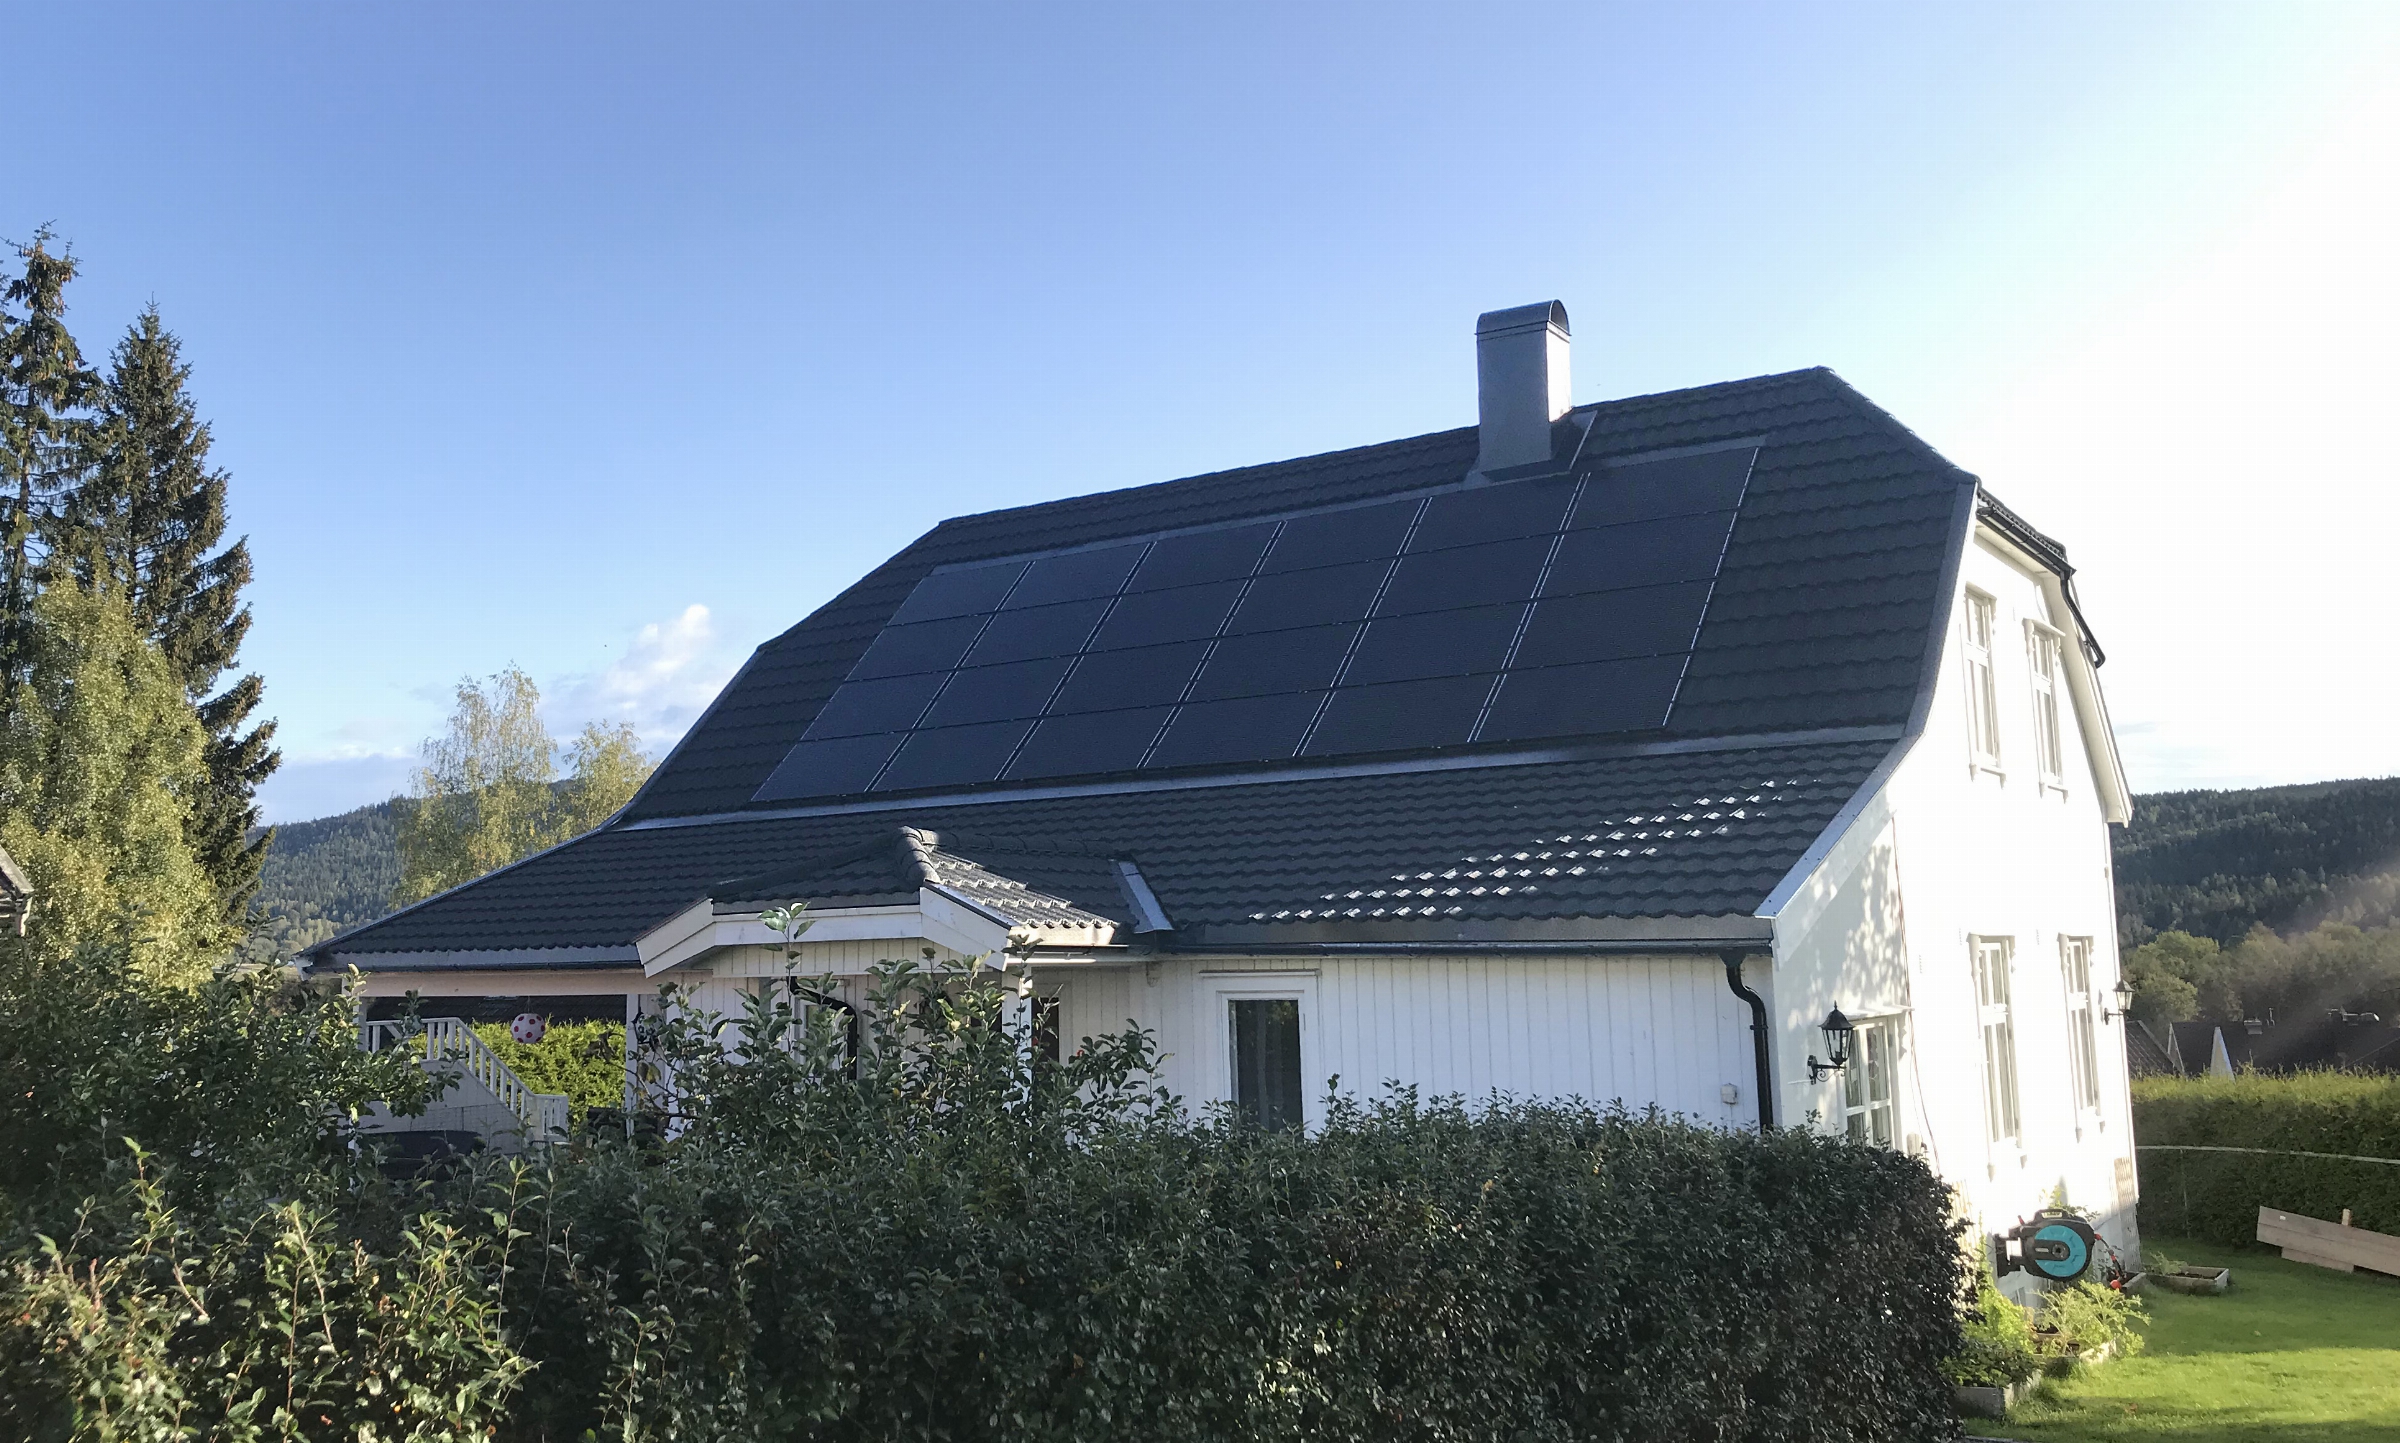 Aerodek taksteinsplater i kombinasjon med integrerte solcellepaneler på tak